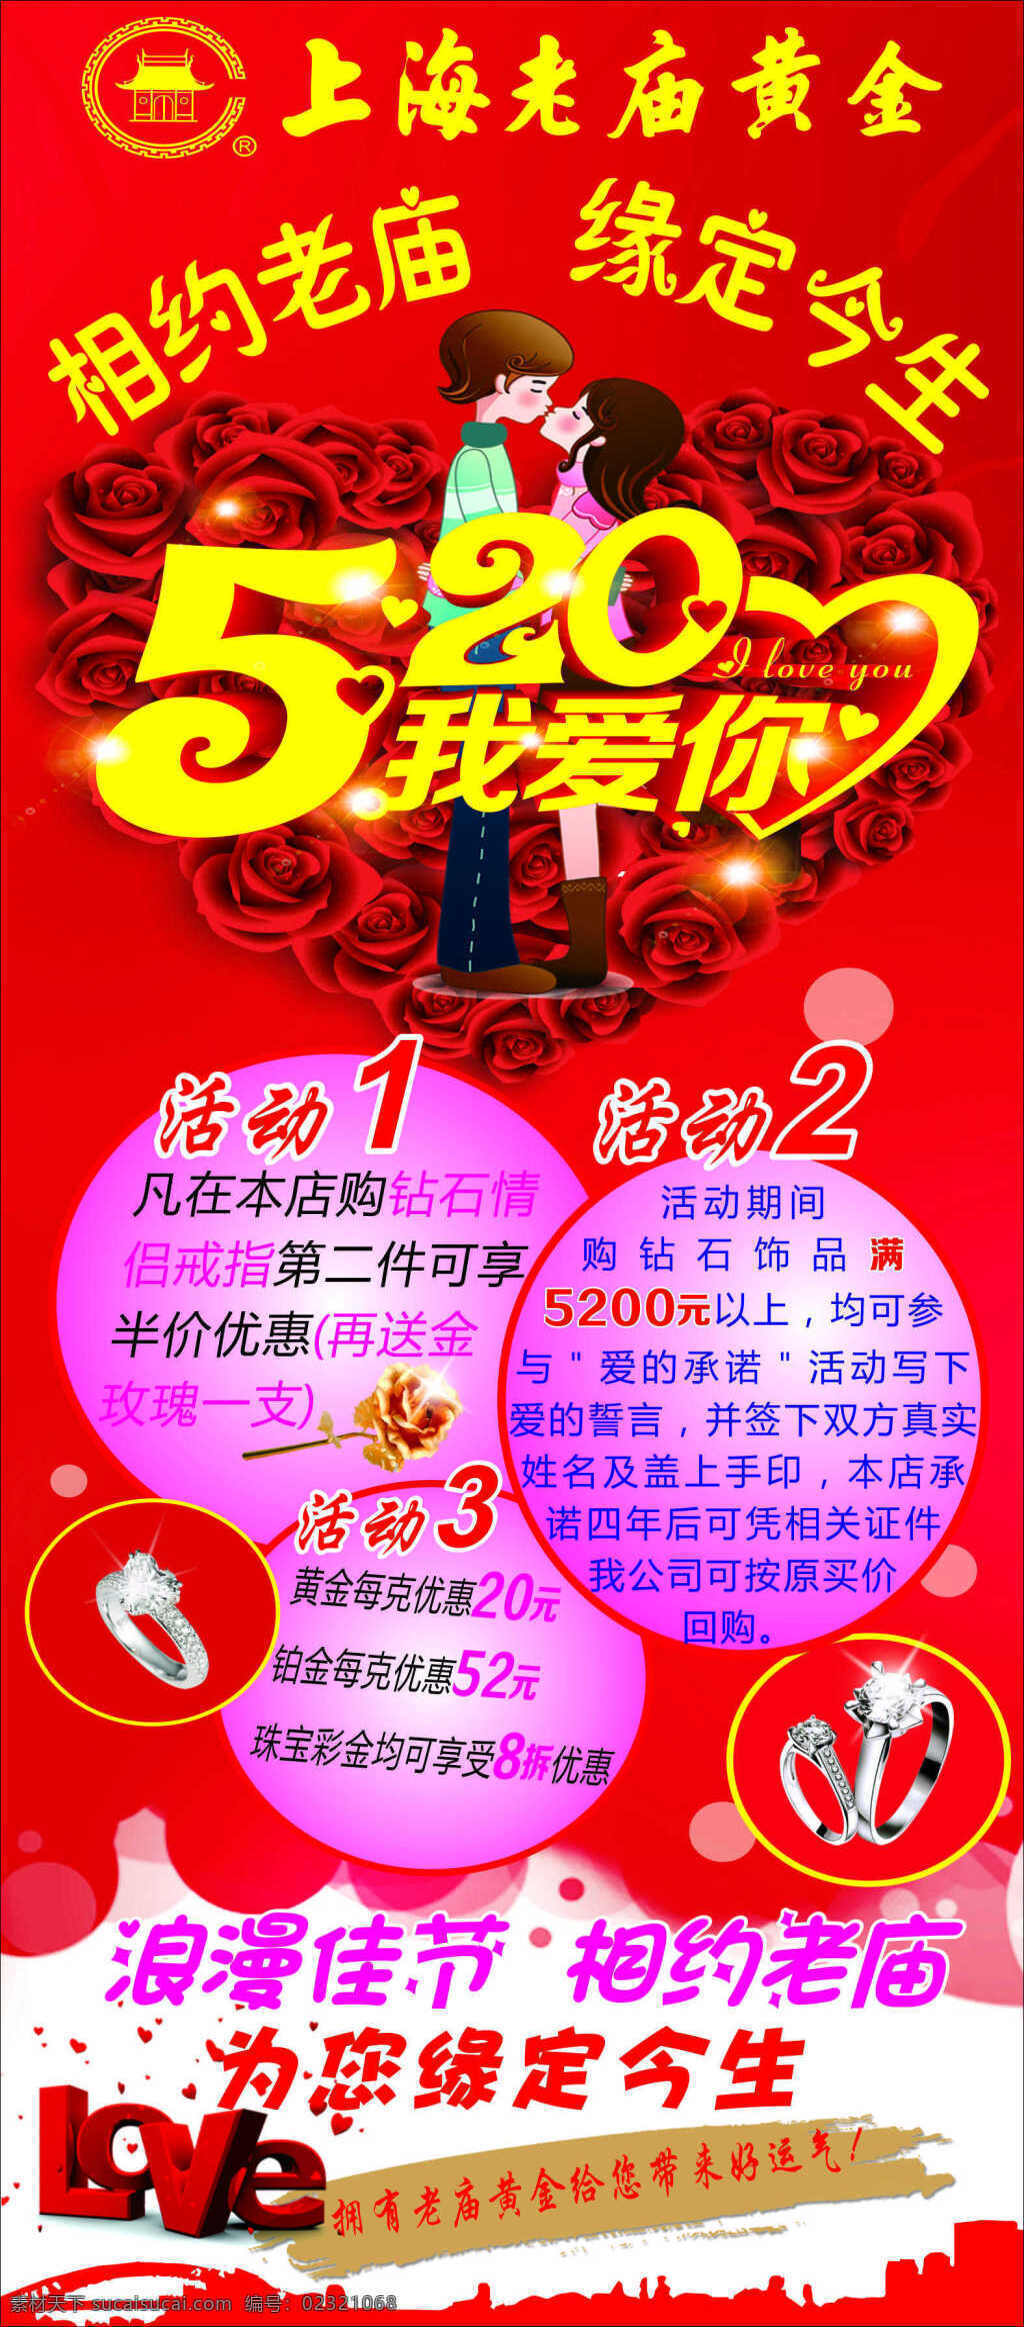 上海老庙黄金 520 活动 展架 520展架 老庙黄金 520海报 红色